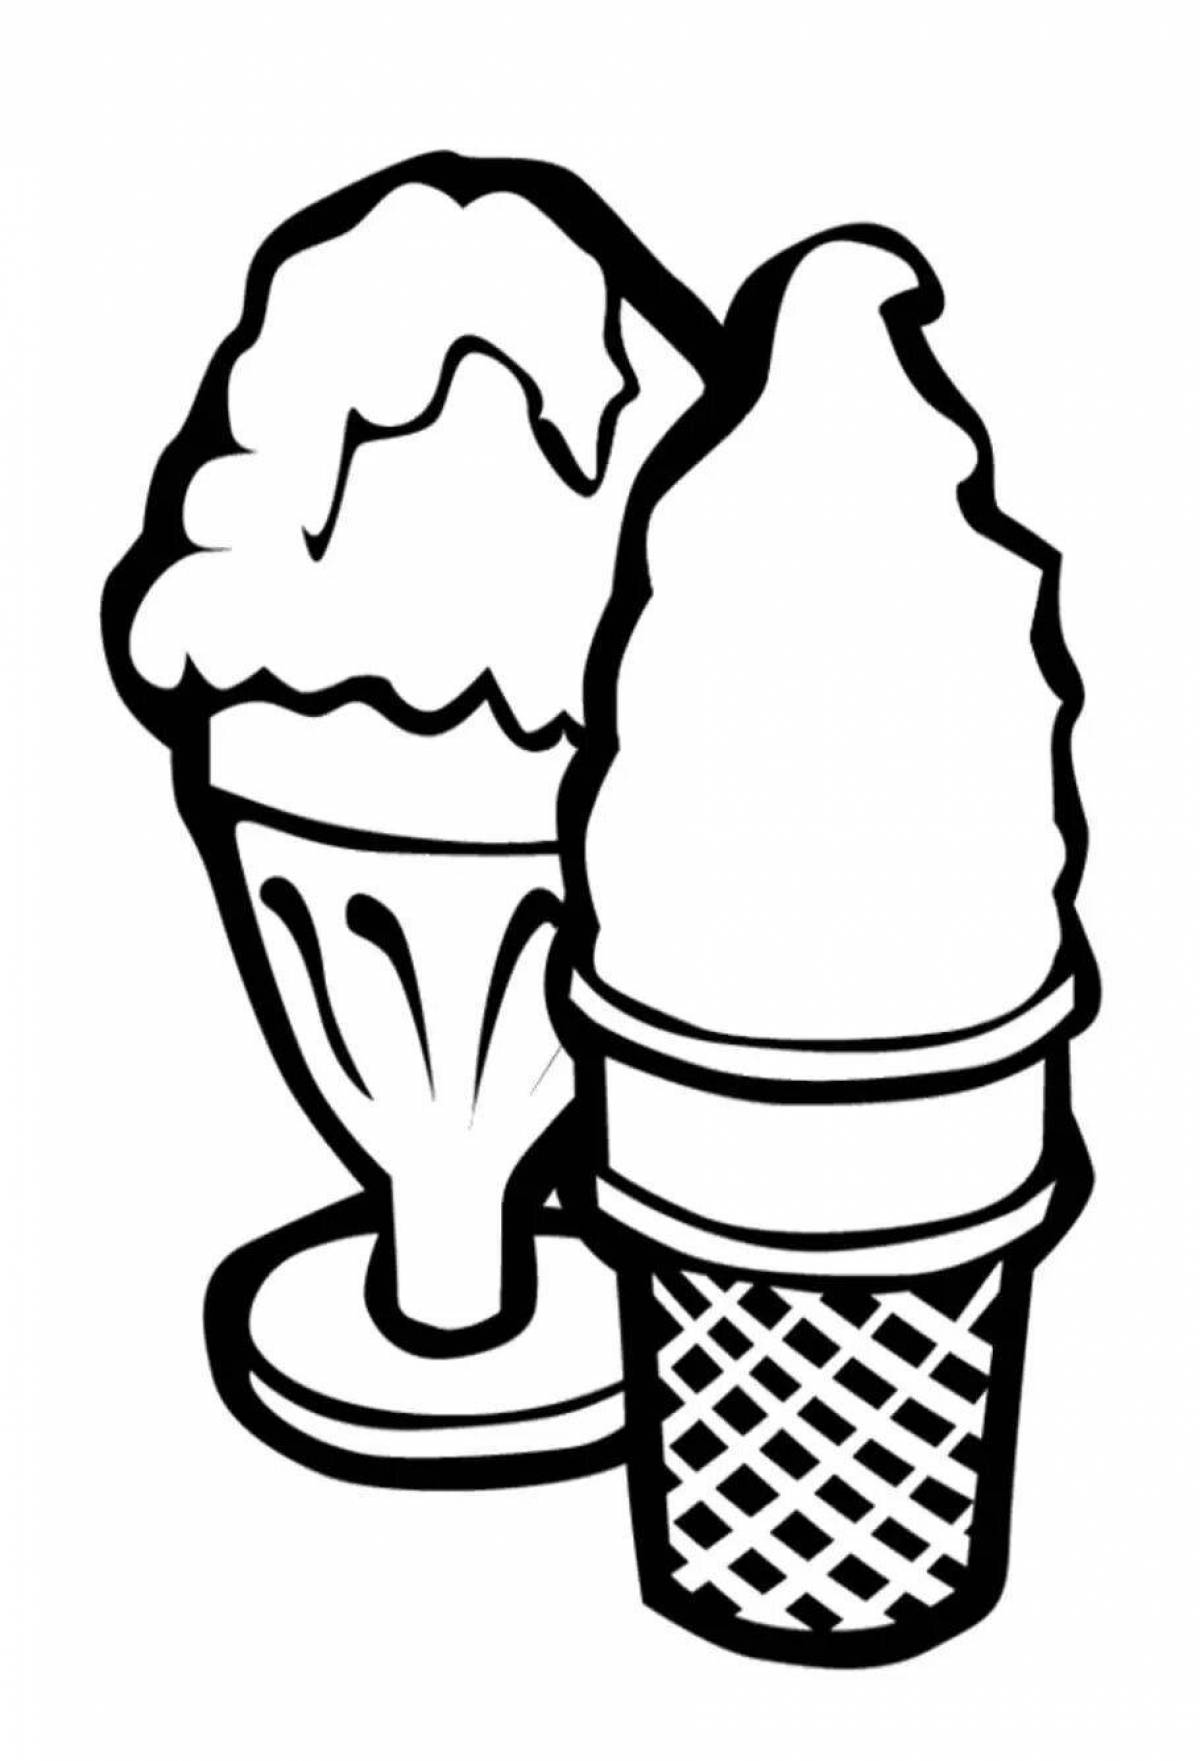 Раскраска мороженщик. Раскраска Ice Cream мороженщик. Мороженое раскраска для детей. Картинки для раскрашивания мороженое. Раскраска для девочек мороженое.